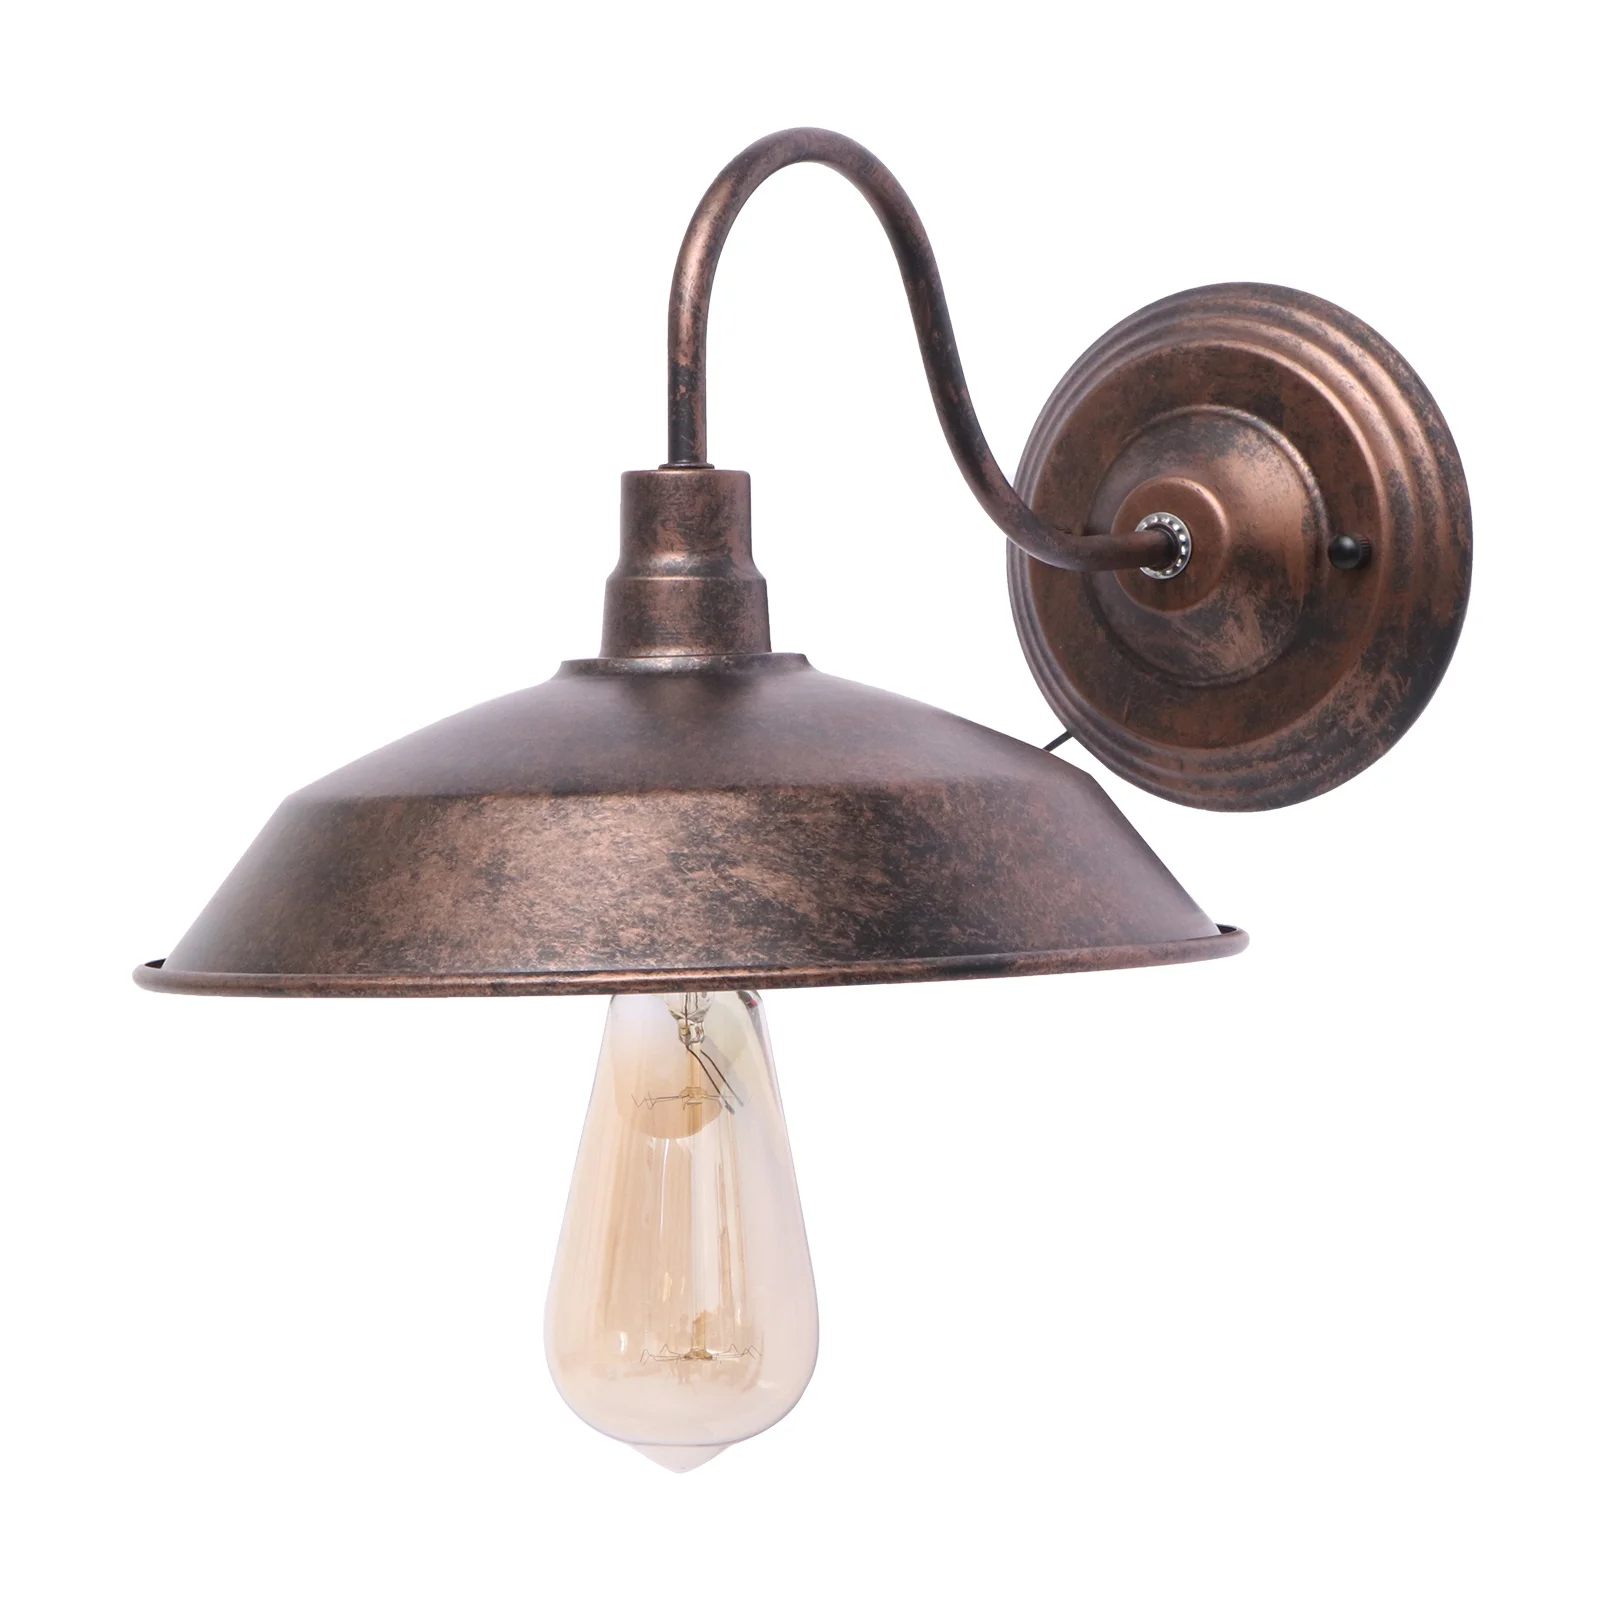 

Настенный светильник Е27, Прочная Железная декоративная лампа без лампочки, для дома, гостиной, спальни, ресторана, кофейного бара, 2 шт.